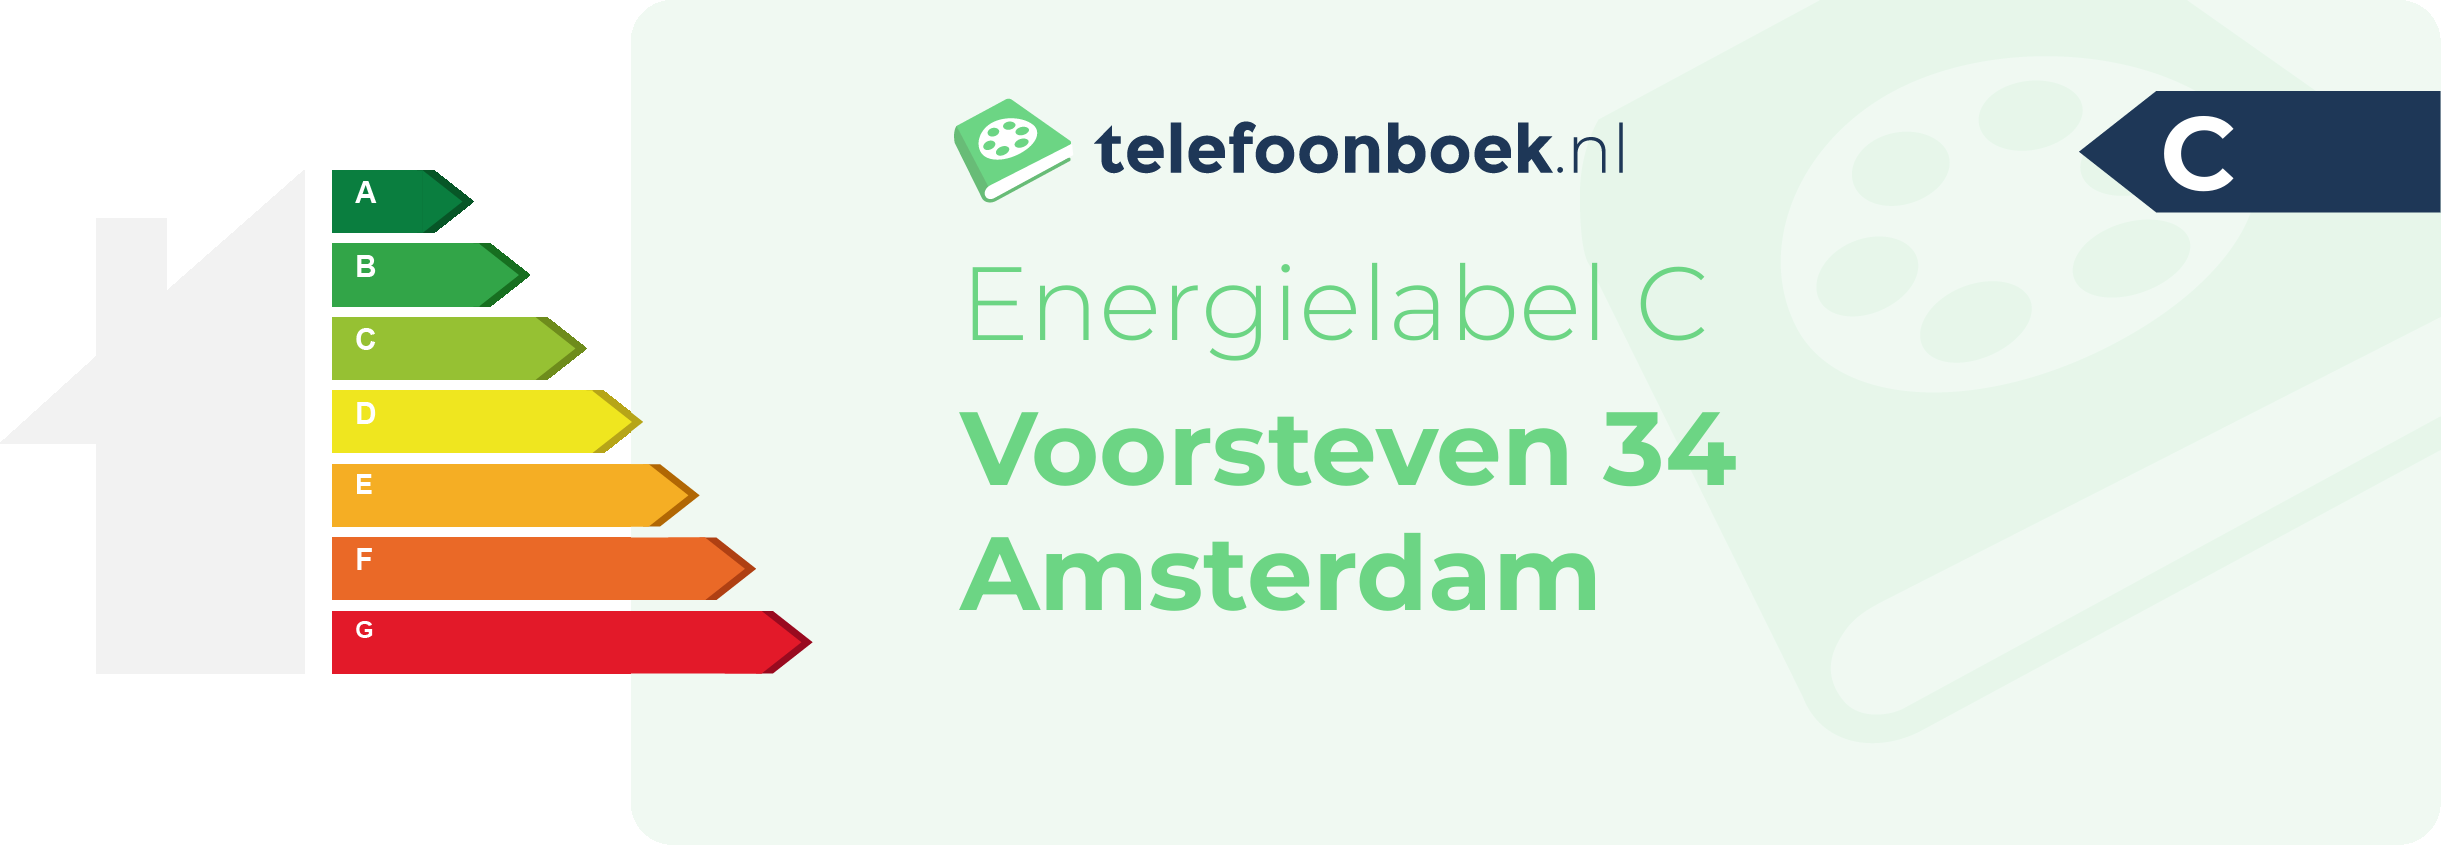 Energielabel Voorsteven 34 Amsterdam